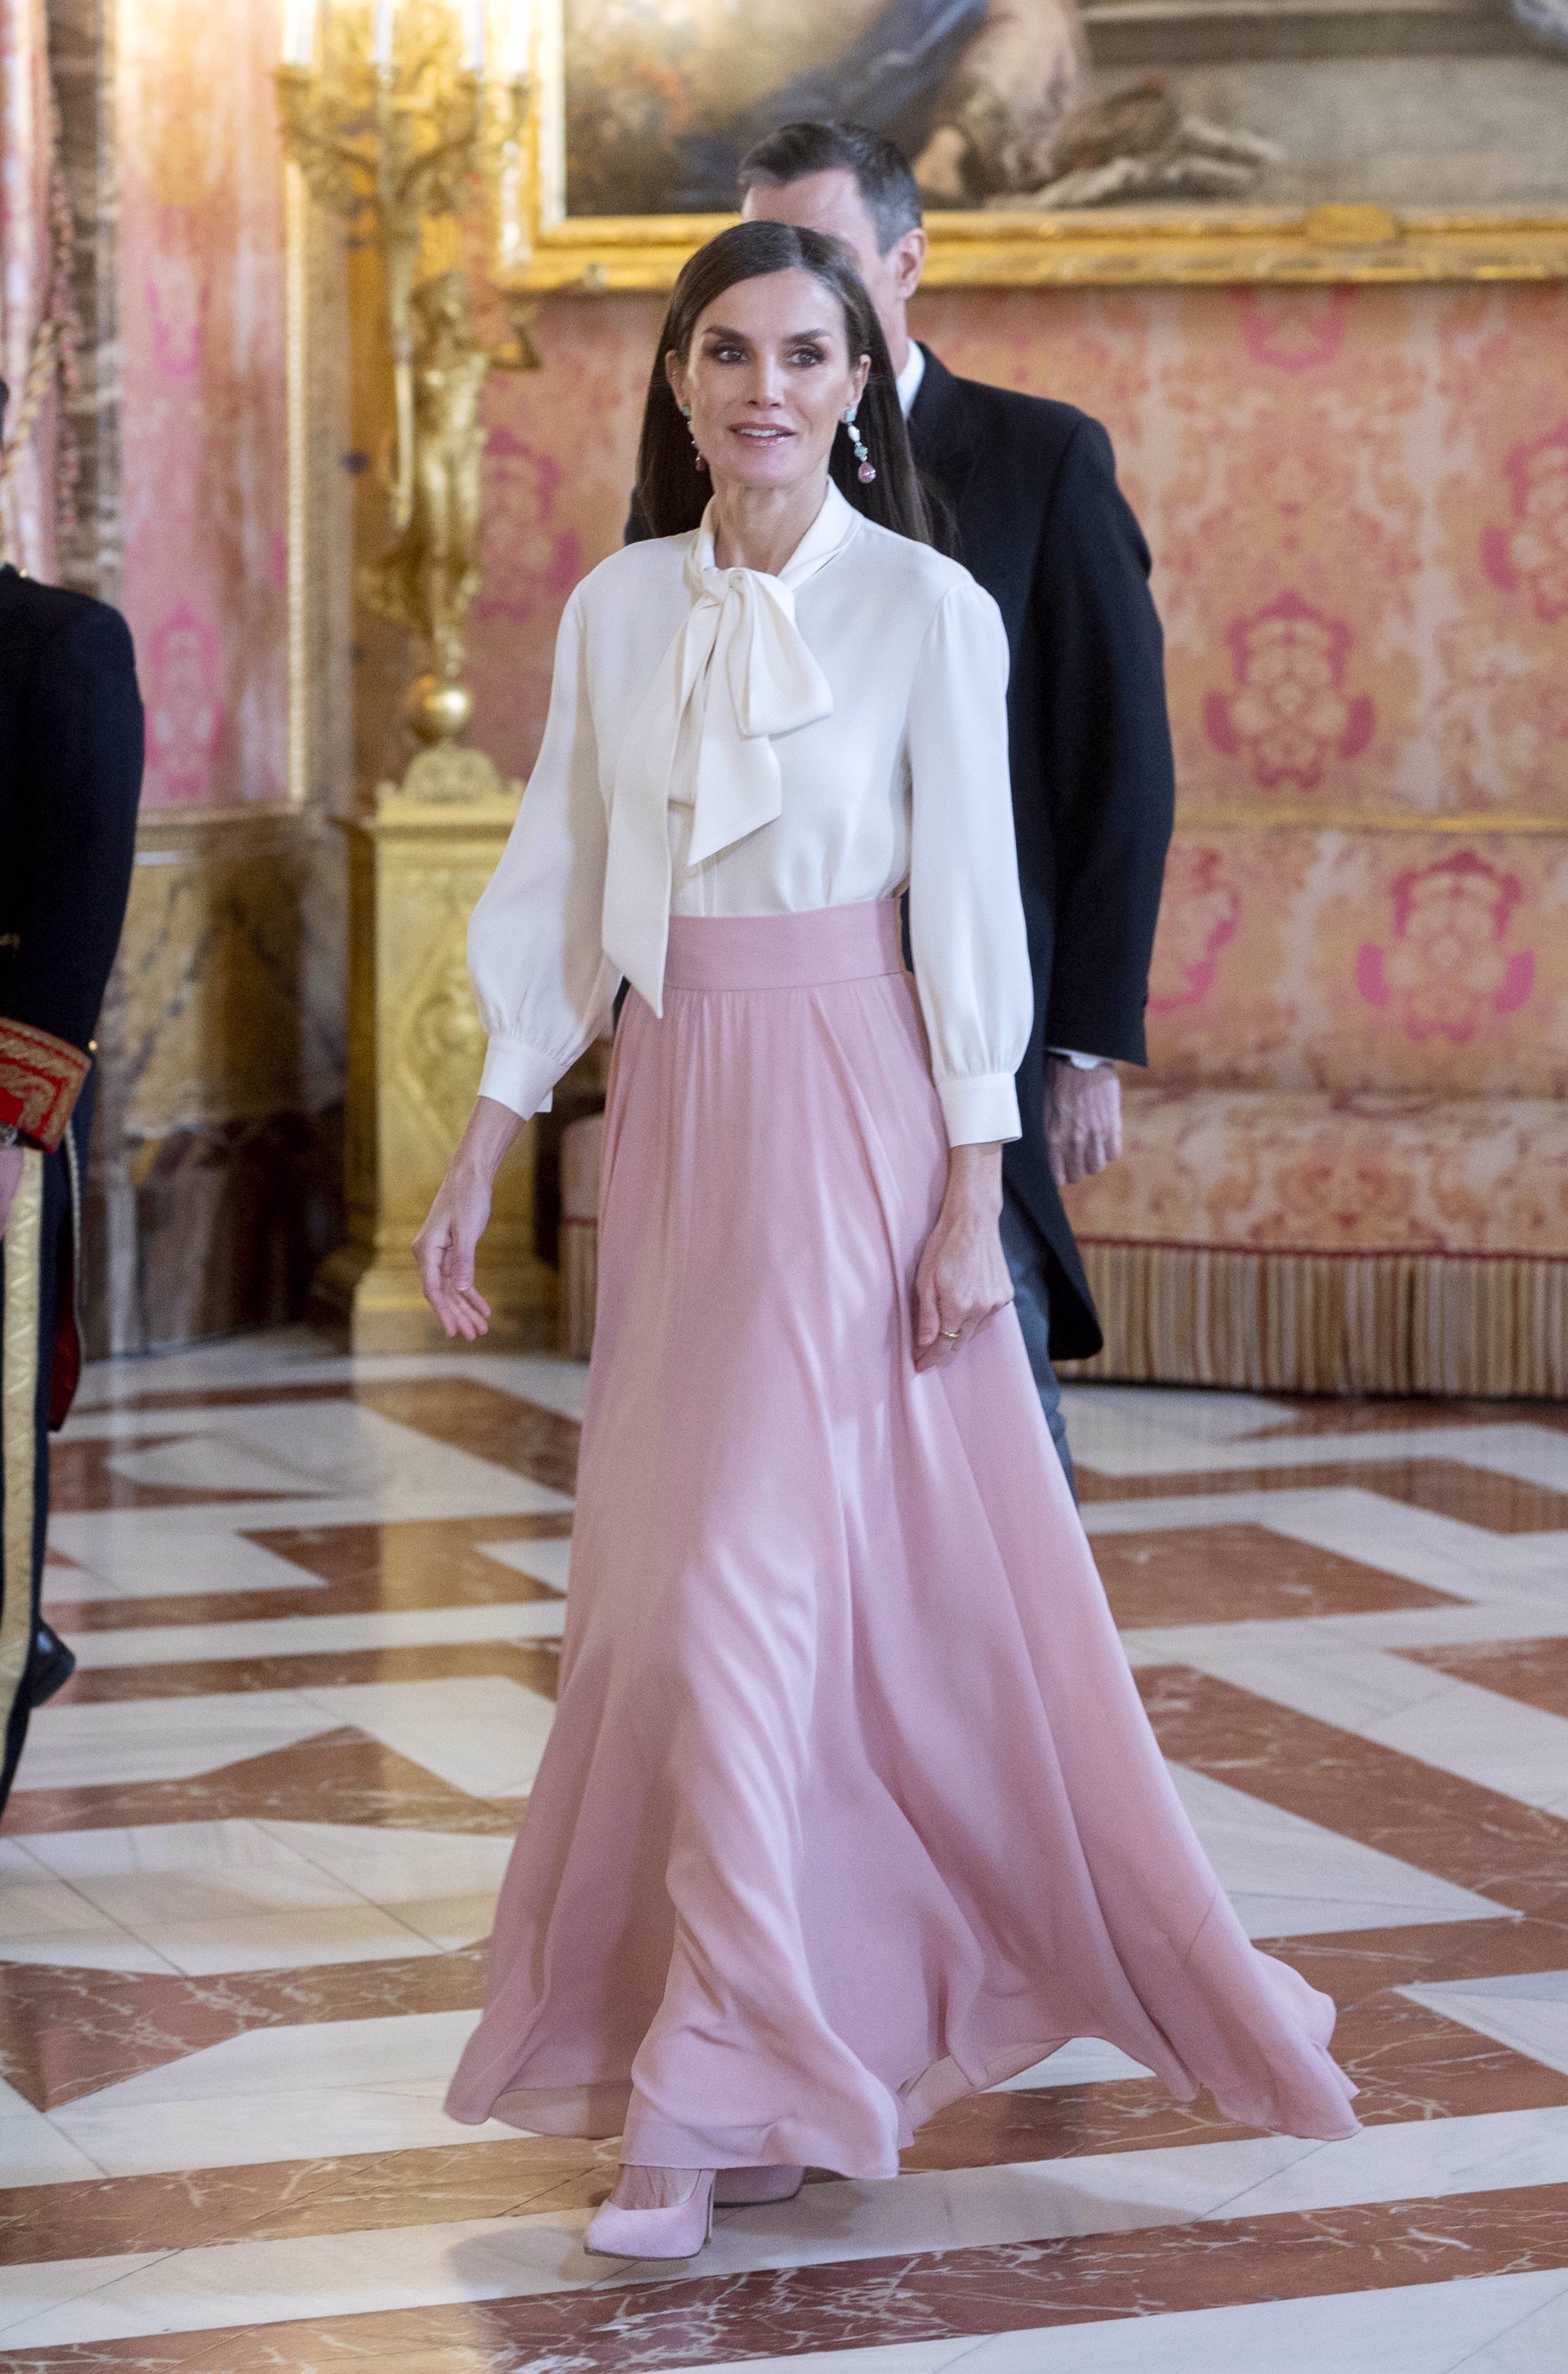 La reina Letizia tiene la falda larga plisada dorada perfecta de